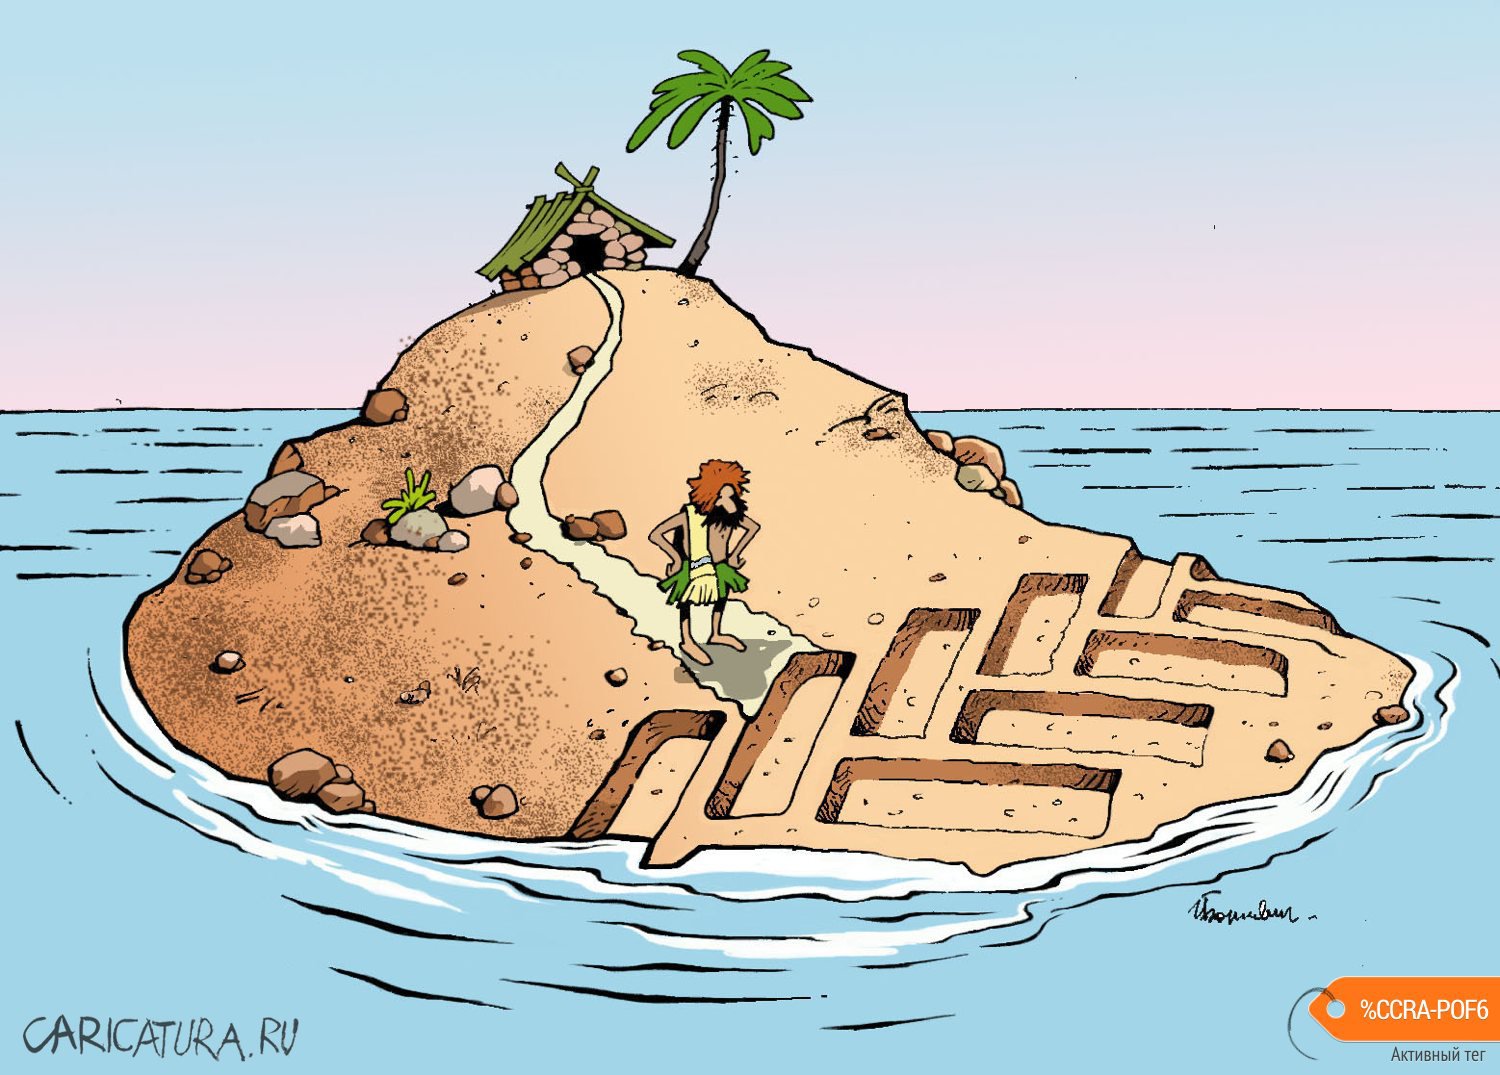 Карикатура "Остров со следом...", Игорь Елистратов